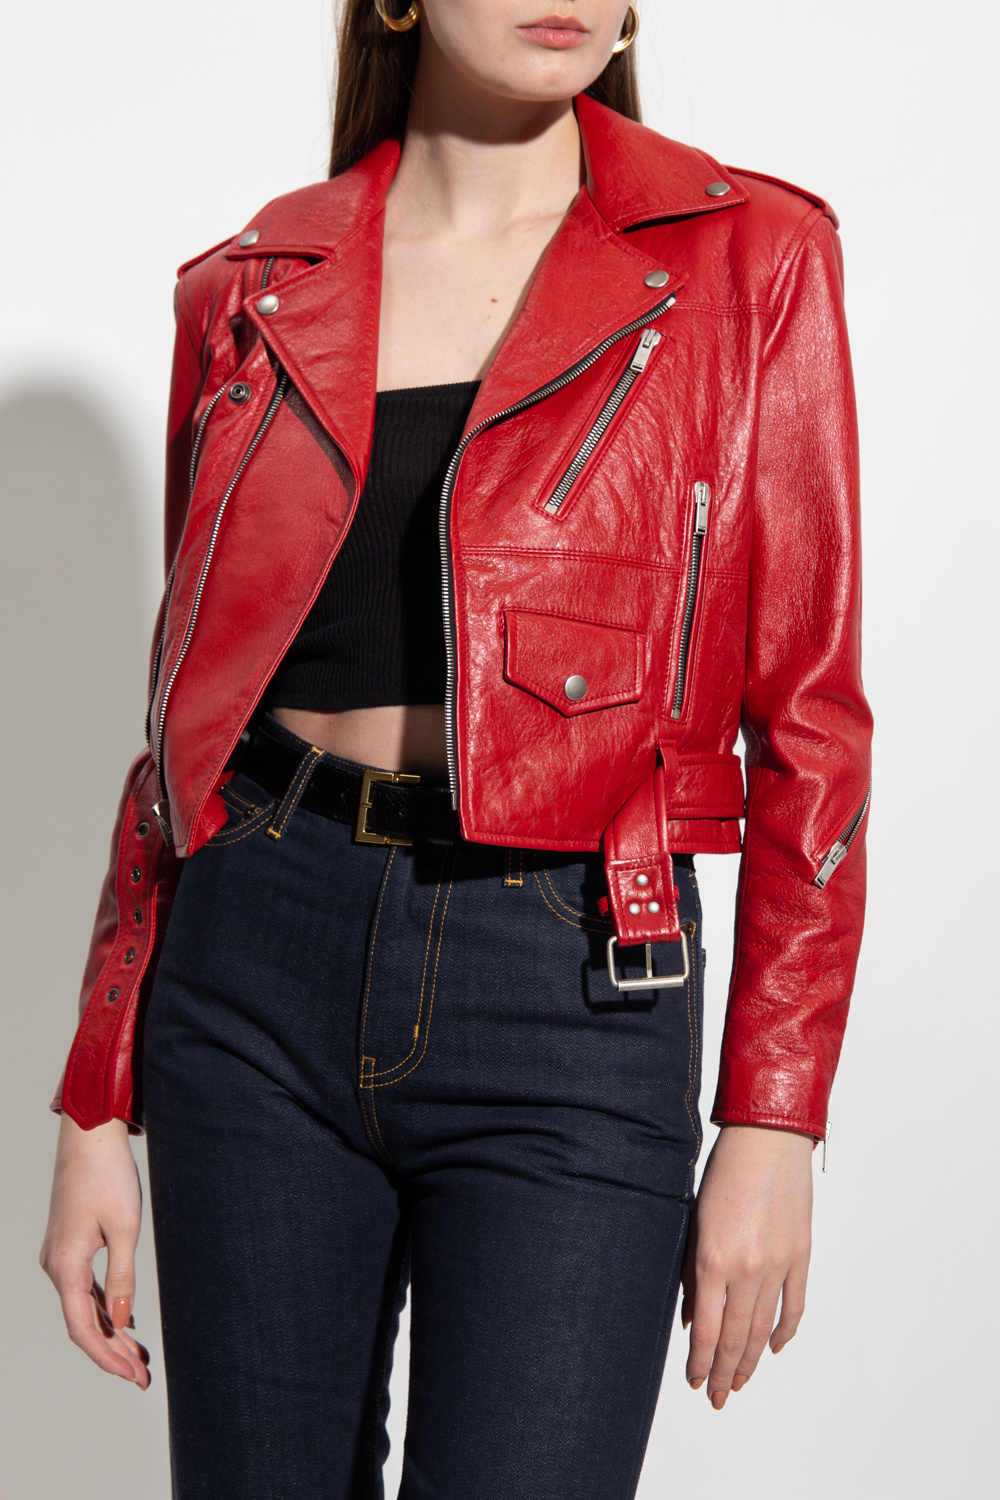 Louis Vuitton Red Lambskin Leather Biker Jacket Size 4/38